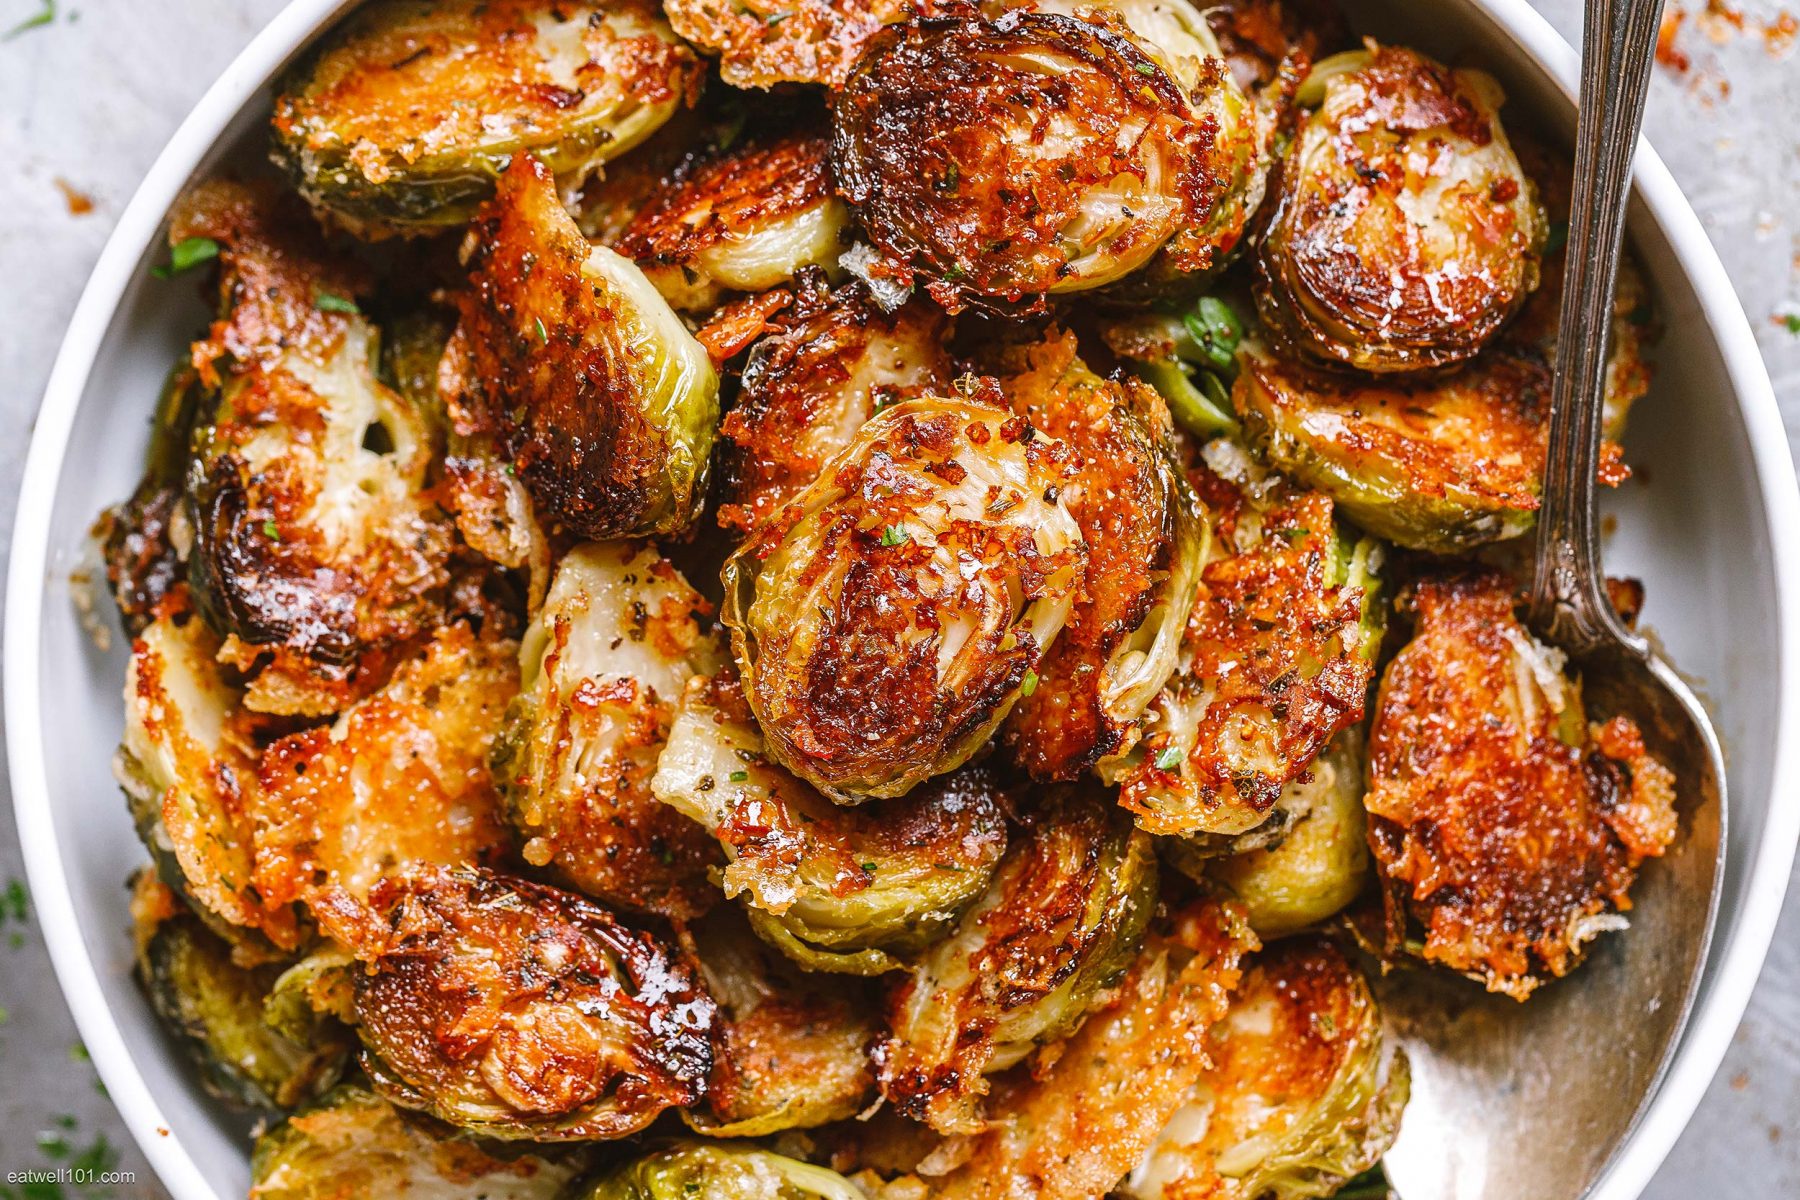 Λαχανάκια Βρυξελλών: Μια συνταγή με τα καλύτερα λαχανάκια Βρυξελλών που έχετε φάει στη ζωής σας